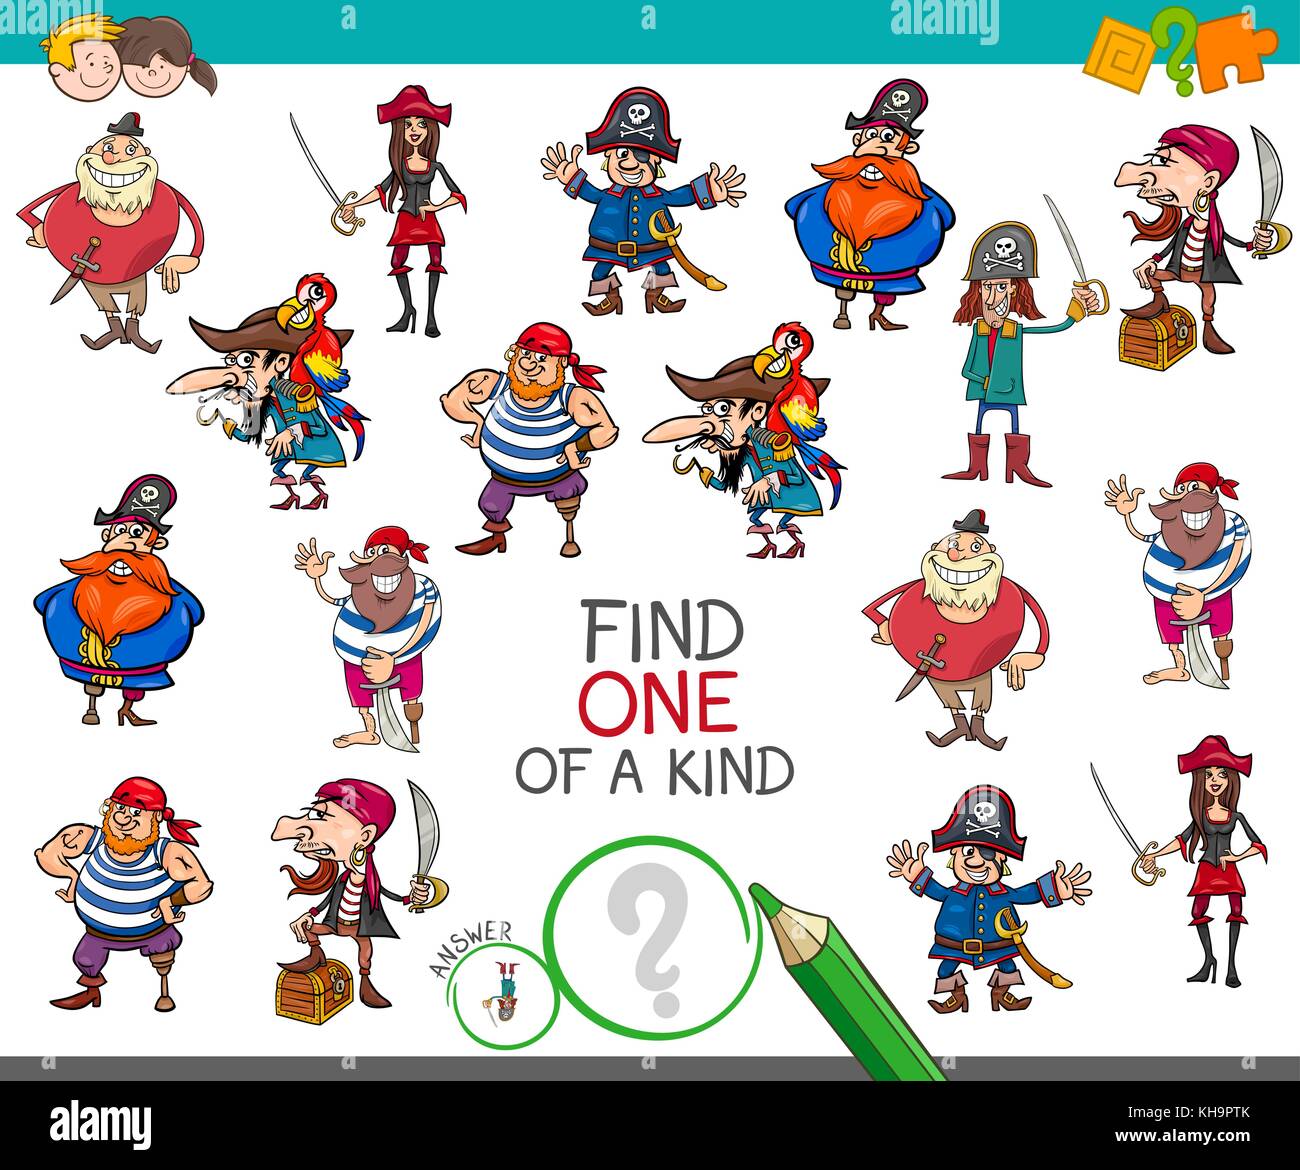 Cartoon illustrazione di trovare un tipo di attività educativa gioco per bambini con pirati personaggi dei fumetti Illustrazione Vettoriale